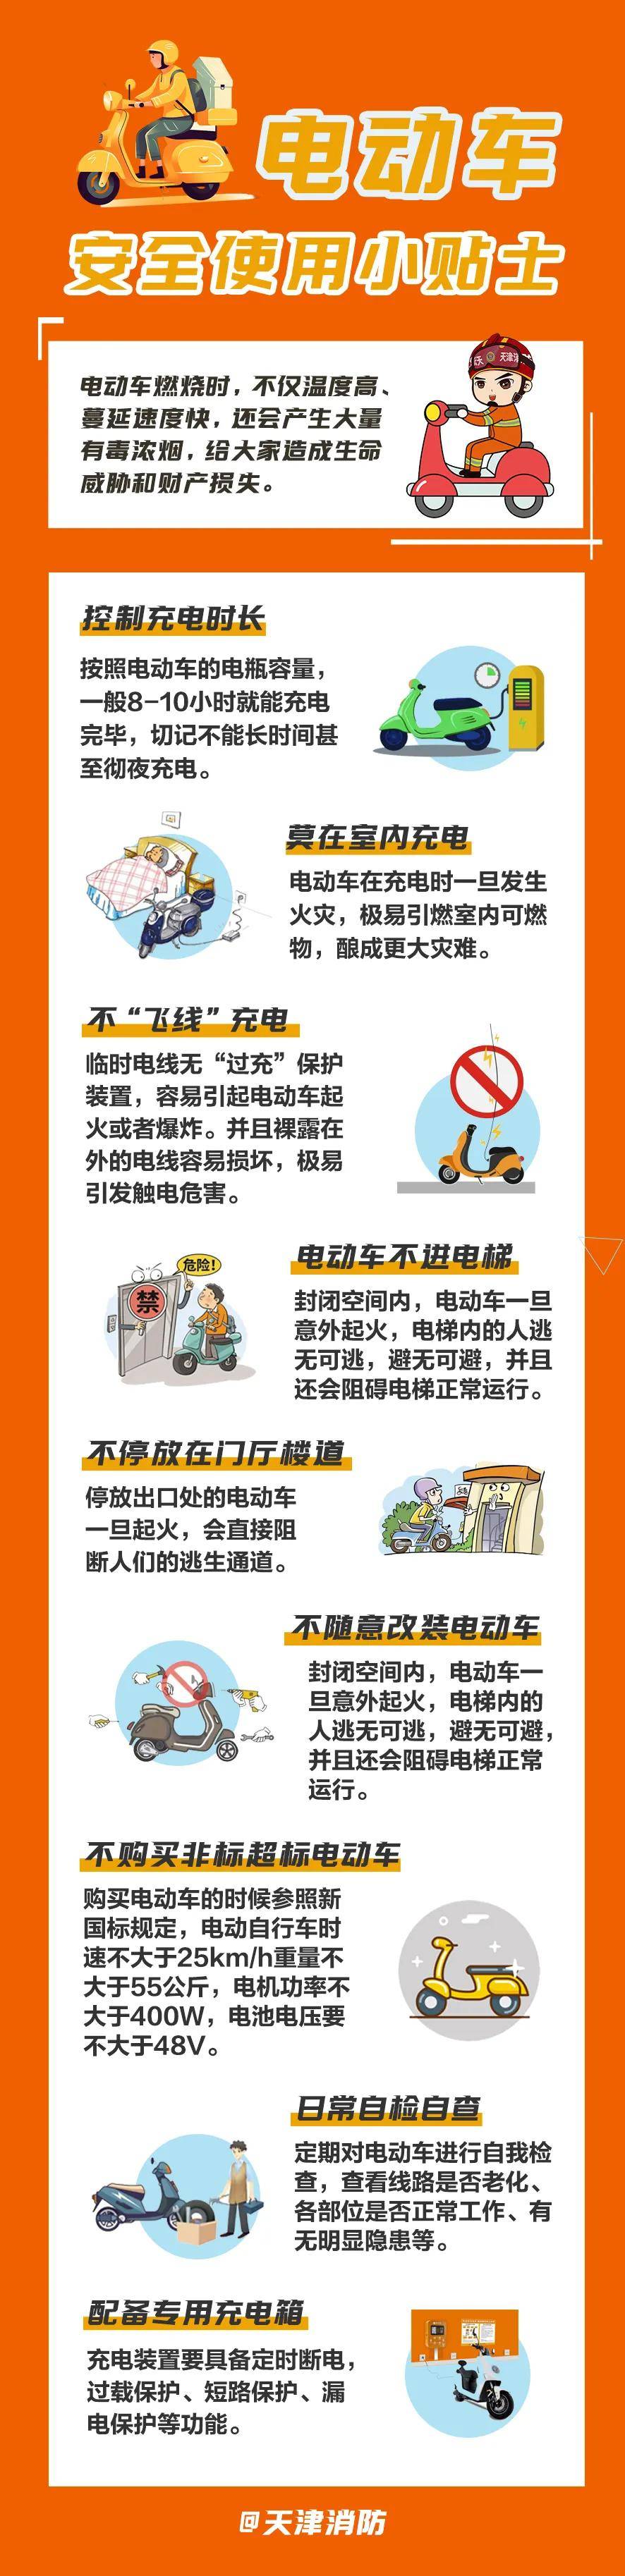 天津:电动自行车安全使用小贴士